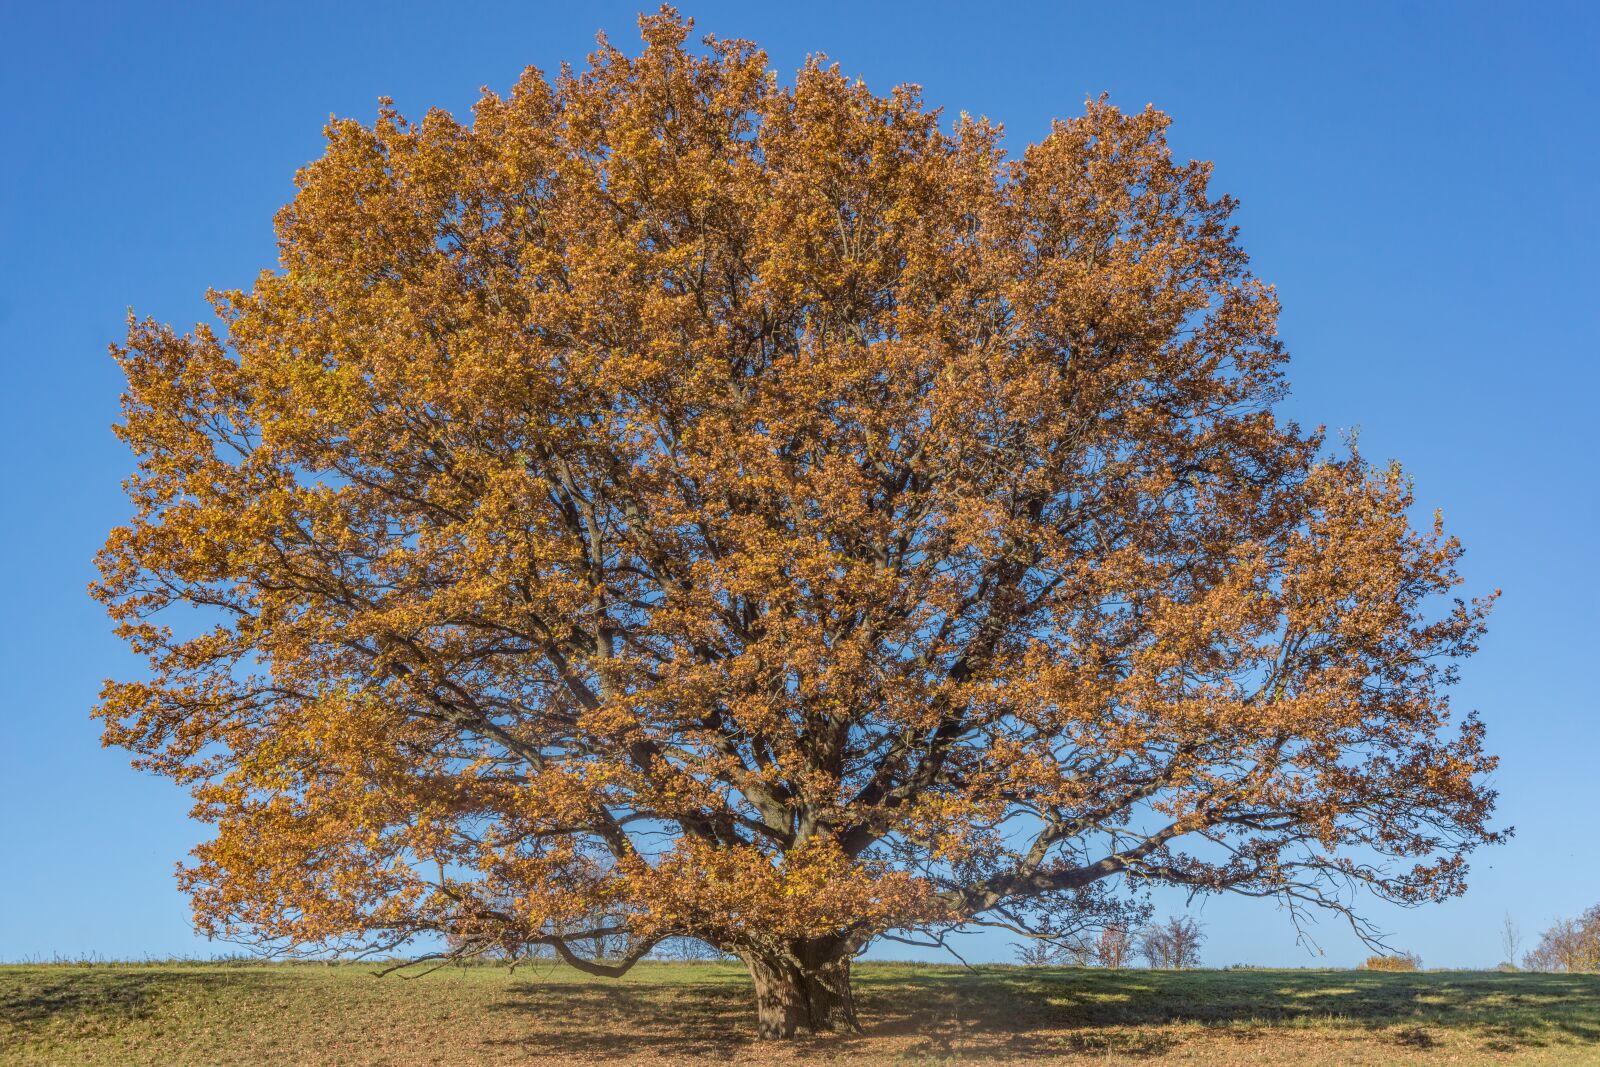 Sony Alpha NEX-7 sample photo. Tree, oak, outdoor photography